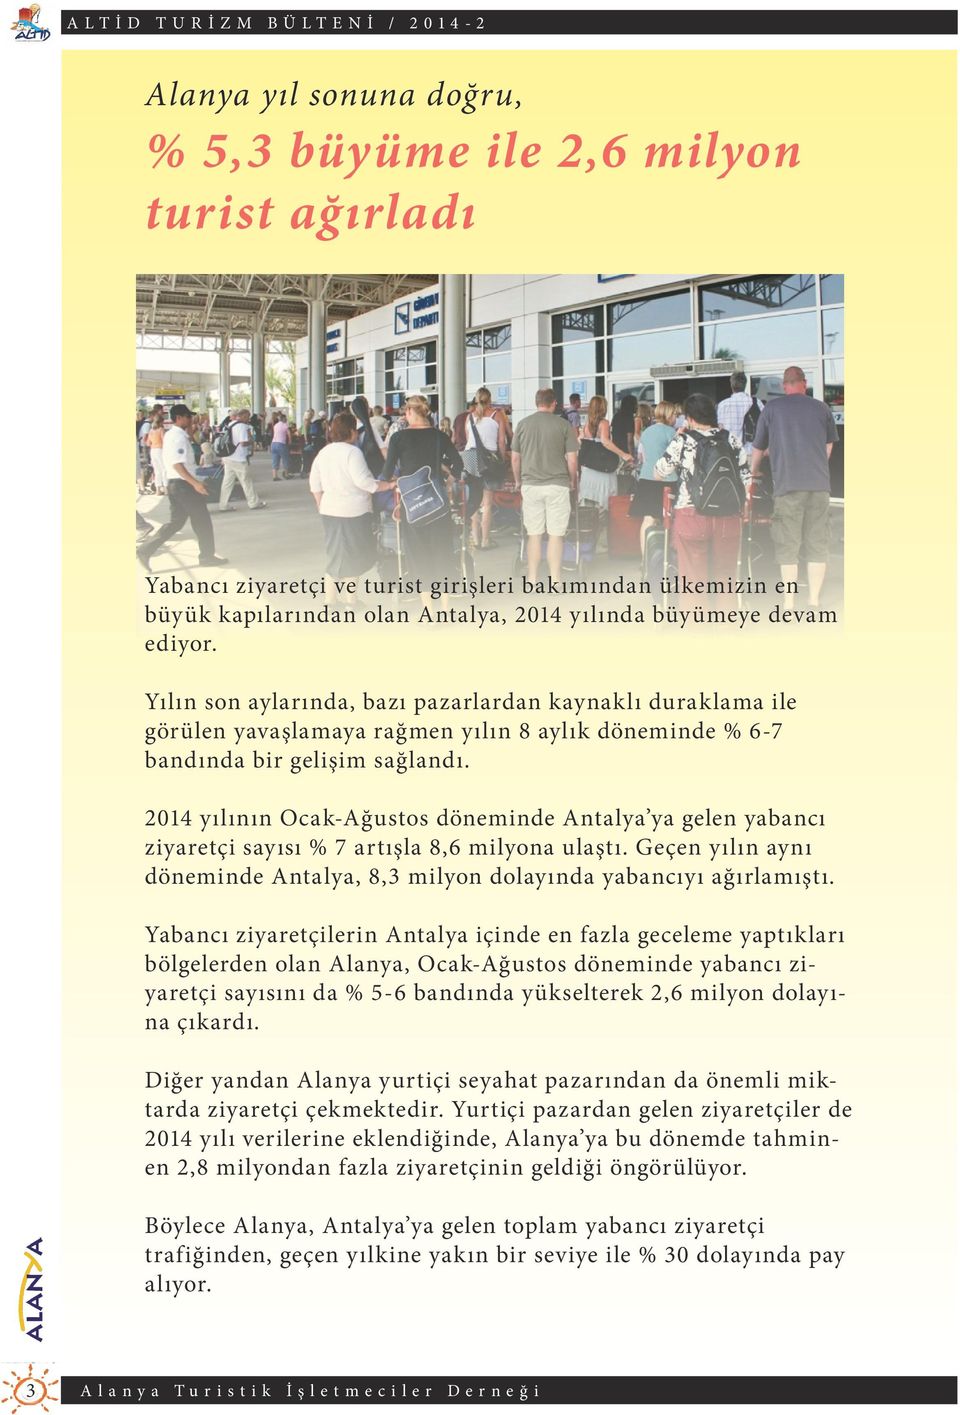 2014 yılının Ocak-Ağustos döneminde Antalya ya gelen yabancı ziyaretçi sayısı % 7 artışla 8,6 milyona ulaştı. Geçen yılın aynı döneminde Antalya, 8,3 milyon dolayında yabancıyı ağırlamıştı.